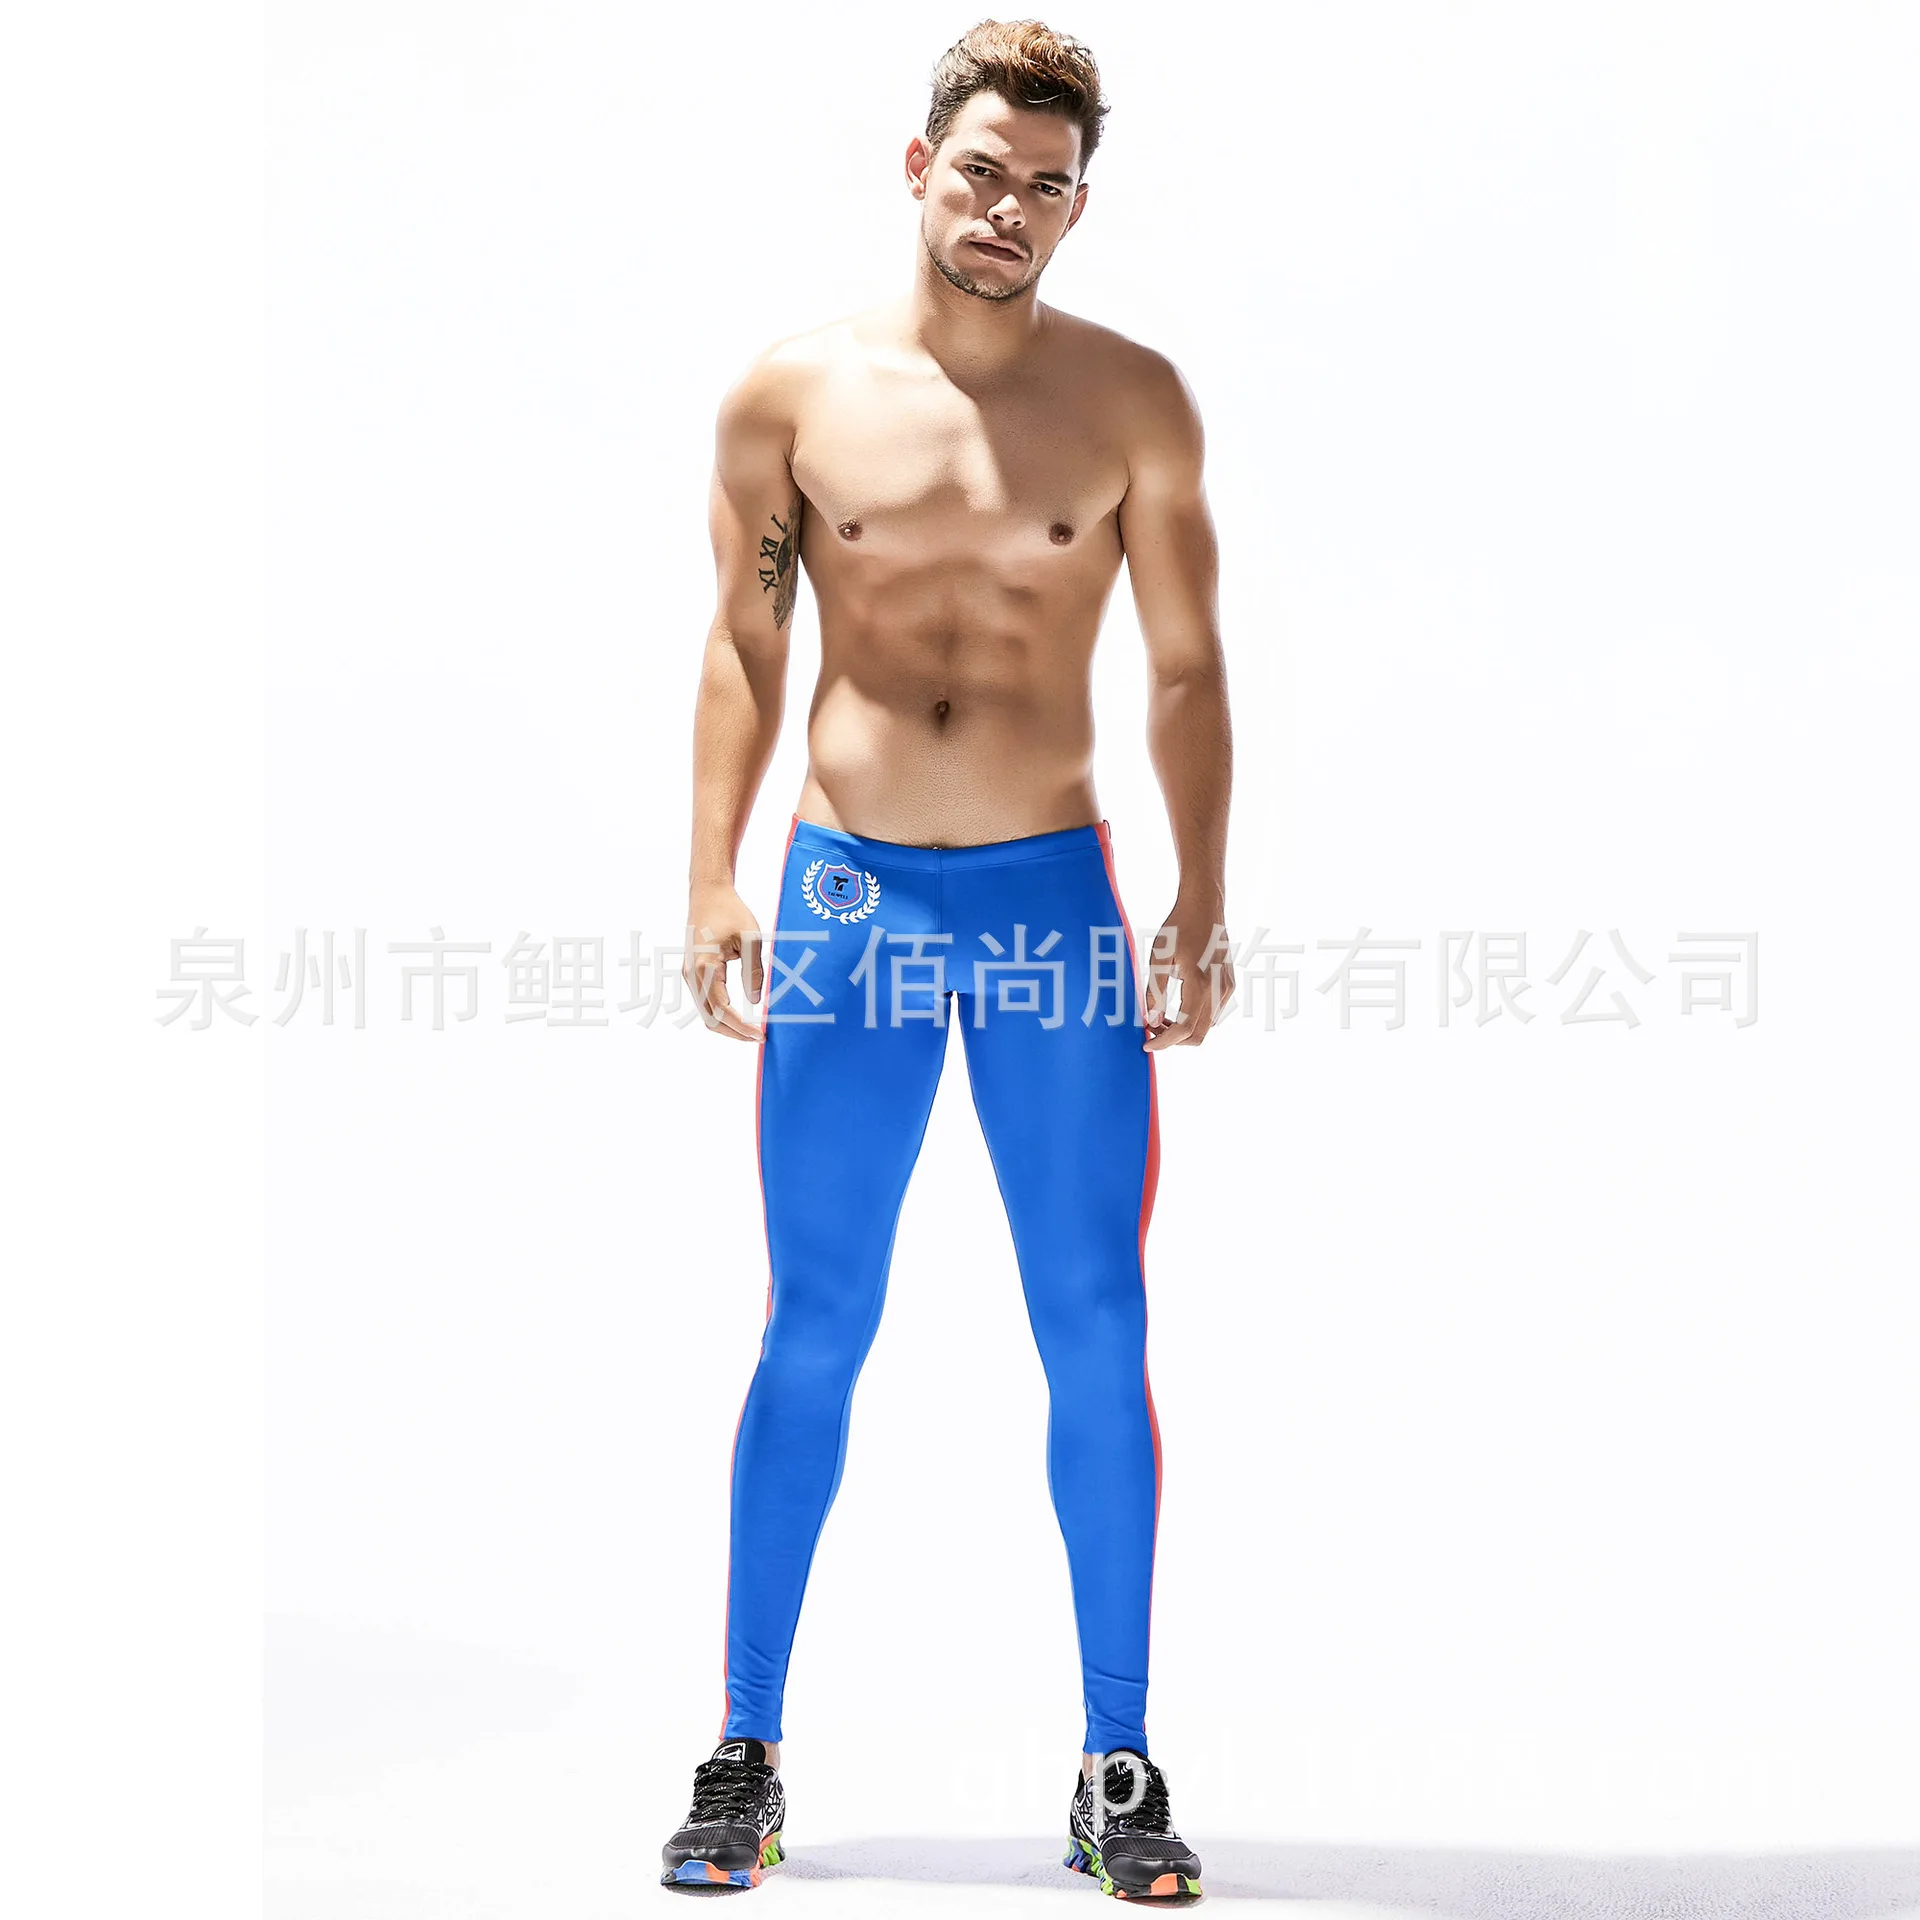 Для мужчин супероблегающие неопреновые брюки от Гидрокостюма для серфинга, подводного погружения Леггинсы Для Сноркелинга утепленные штаны для водного спорта для плавания колготки